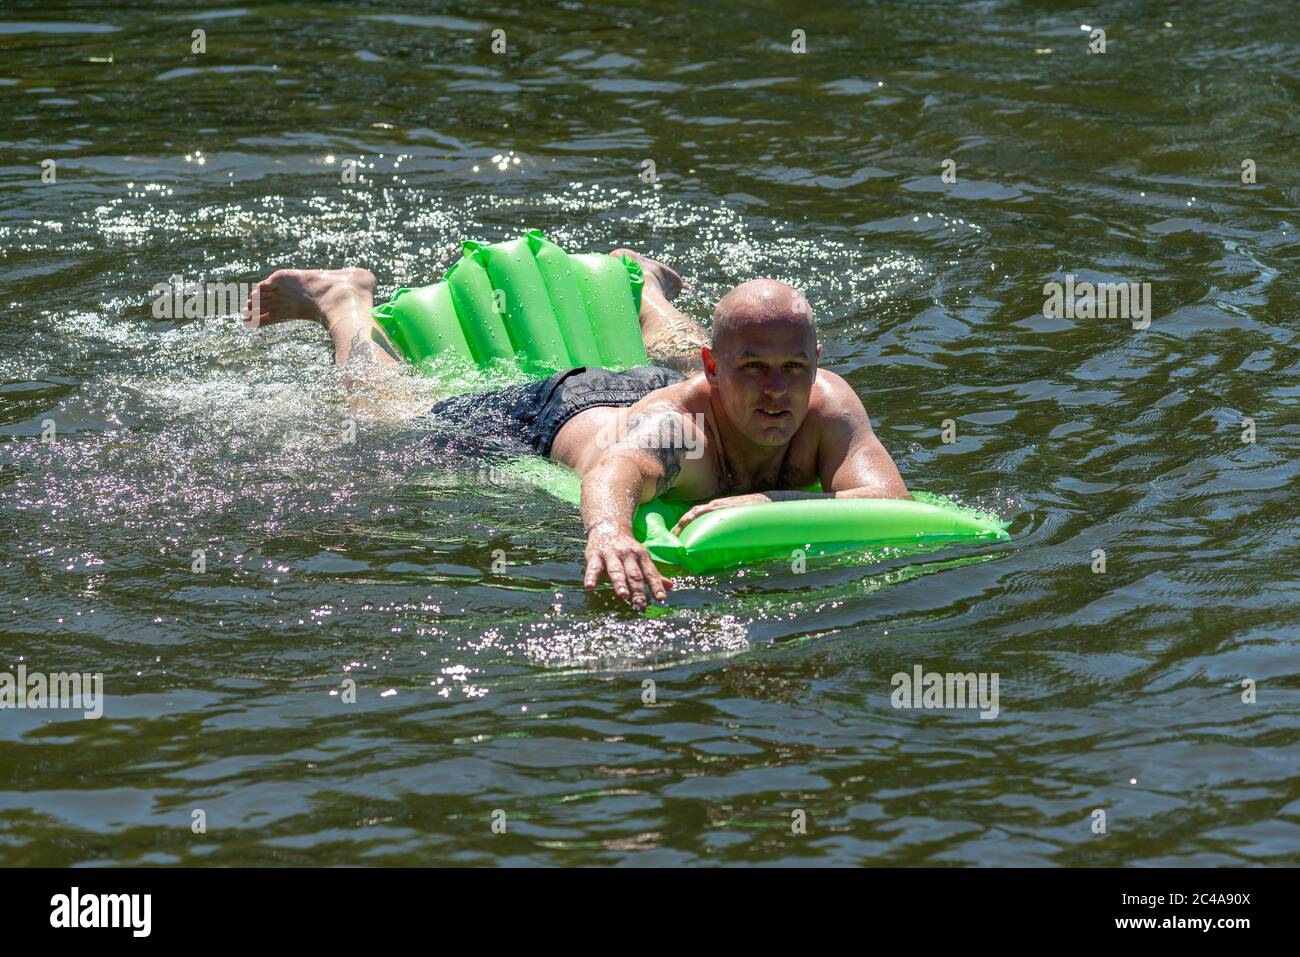 Uomo su un lilo che nuota nel fiume Avon rinfrescarsi nell'acqua fredda. L'onda di calore di metà estate lo rende la giornata più calda con i più alti livelli di UV finora quest'anno e la temperatura a circa 33 gradi nel pomeriggio. Fordingbridge, New Forest, Hampshire, Inghilterra, Regno Unito, 25th giugno 2020. Foto Stock